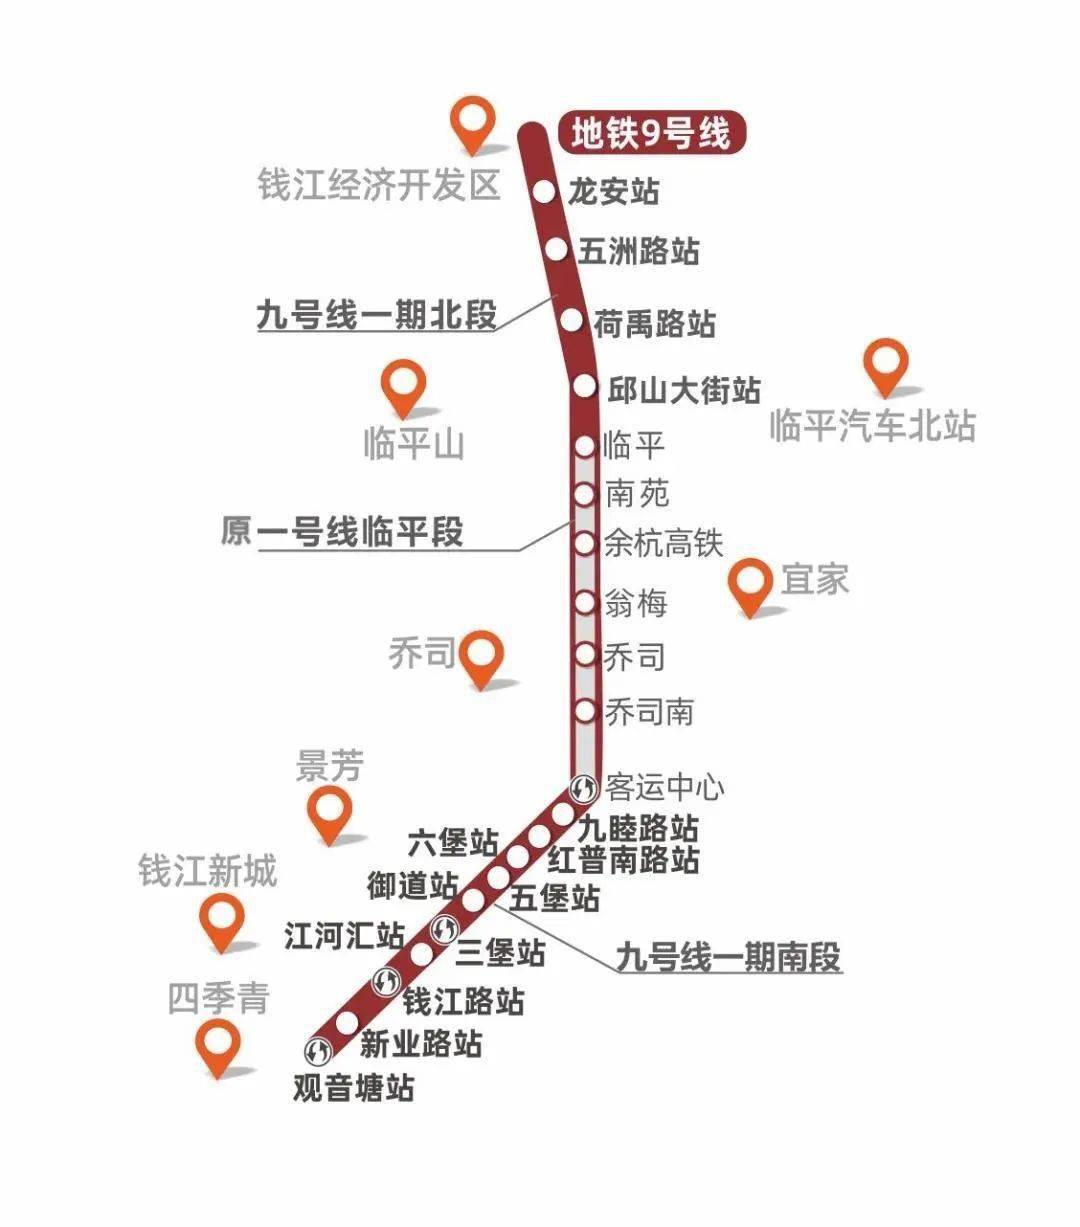 那么,杭州地铁9号线与机场轨道快线都将经过御道站.